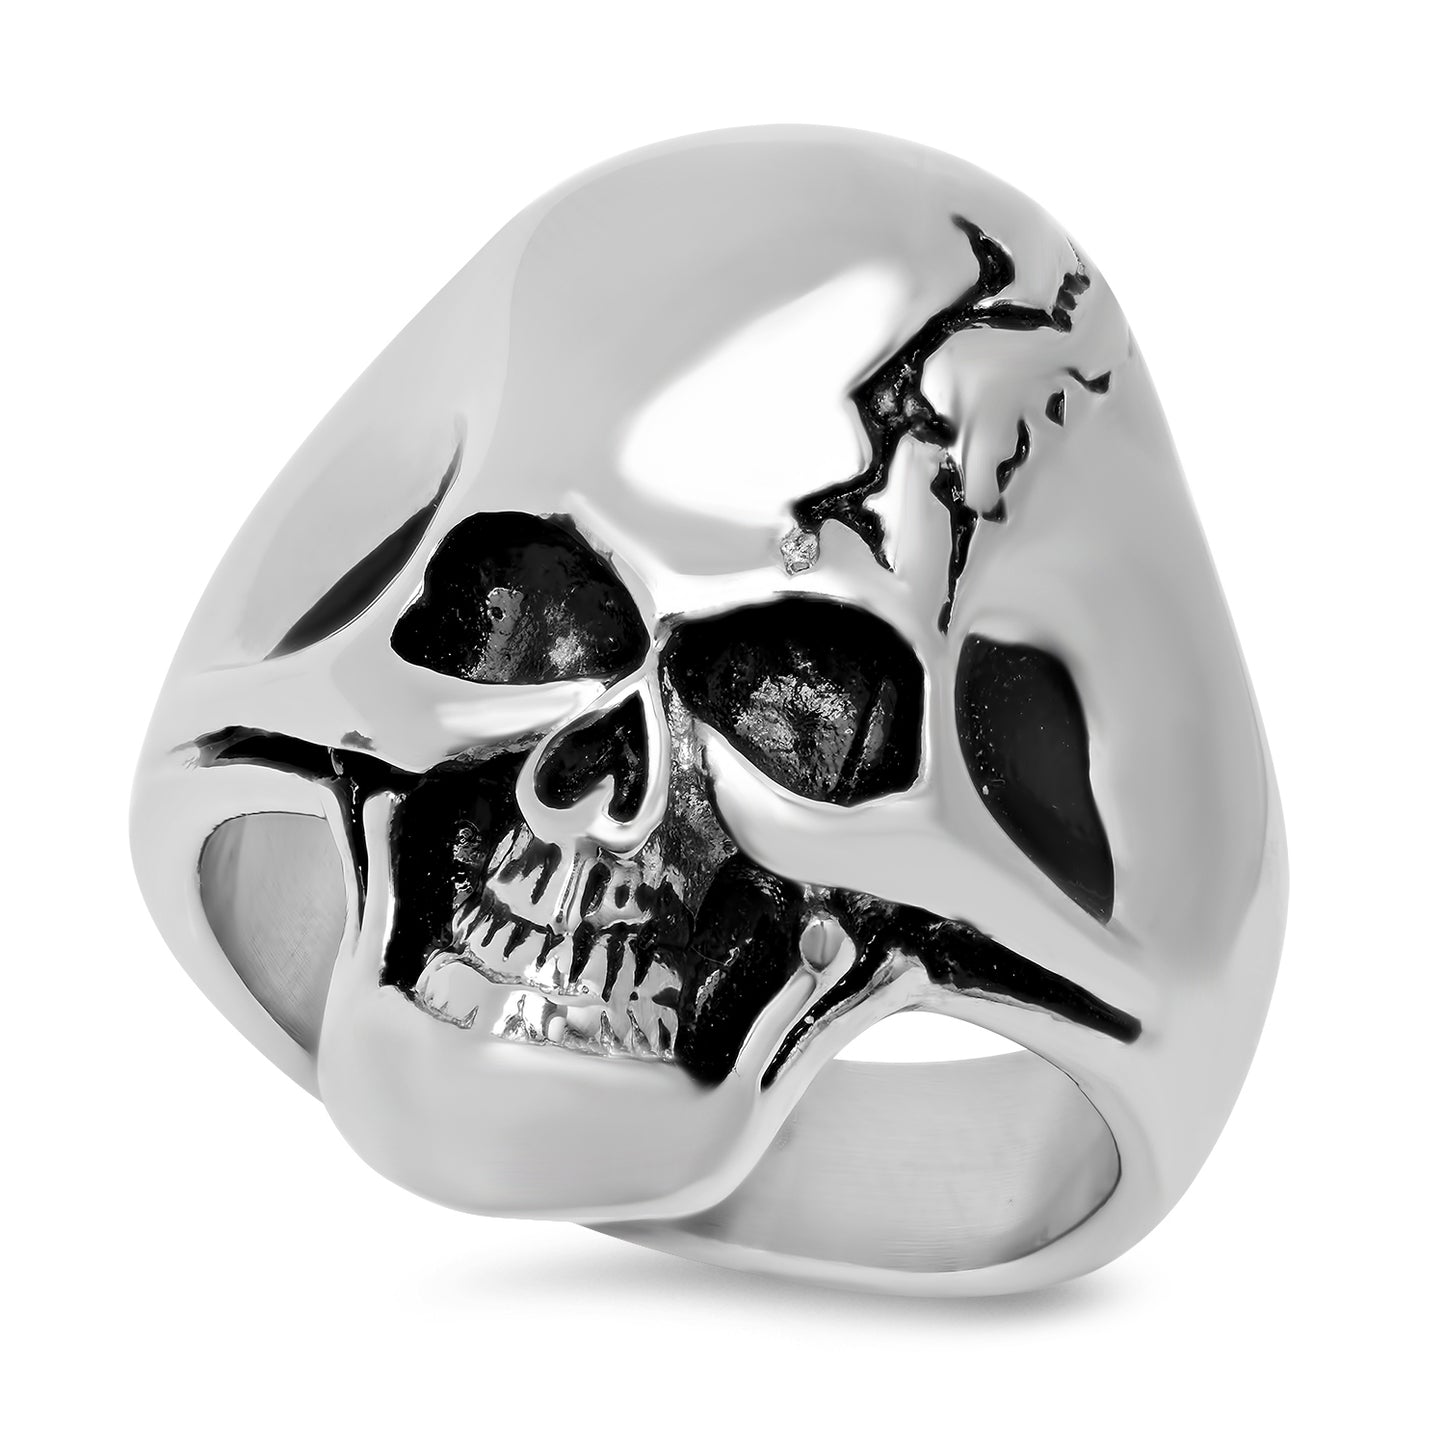 Stainless Steel Grinning Alien Cracked Skull Ring + Microfiber (SKU: ST-SKR104)